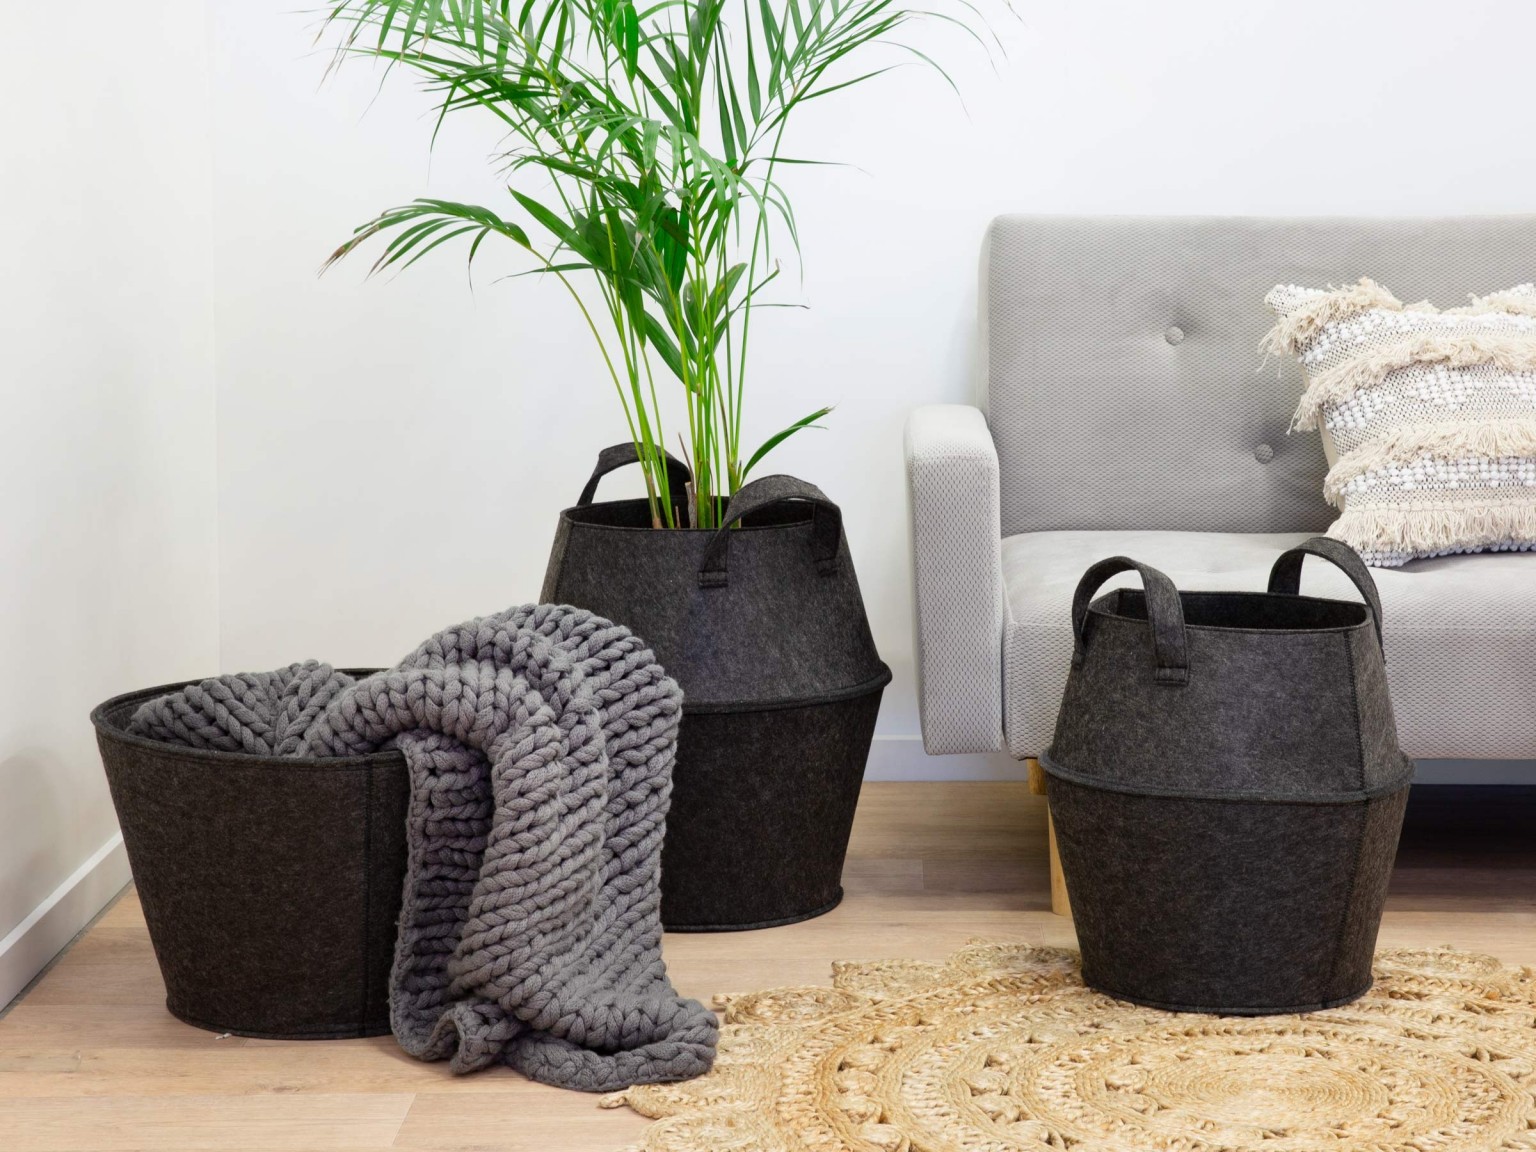 New 2019 trending product foldable felt laundry storage basket Featured Image